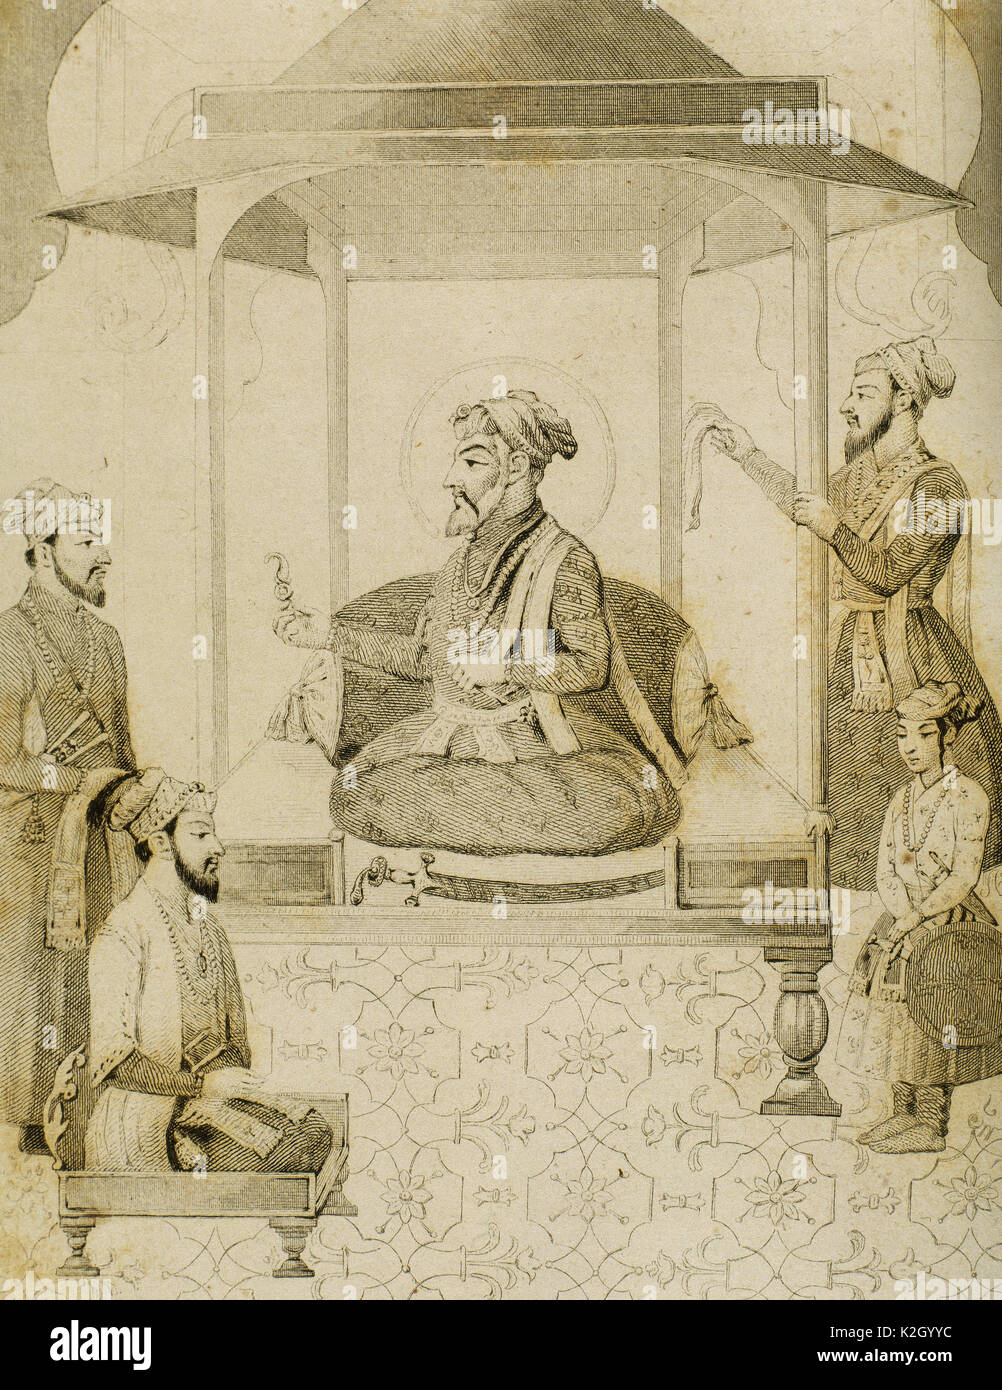 Shah Jahan I (1592-1666). Cinquième Emperador Mughal qui régna de 1628-1658. Il a commandé de nombreux monuments, le plus connu est le Taj Mahal à Agra, qui entombs son épouse Mumtaz Mahal. Sha Djahan donnant un siège pour Dara Shikoh (1615-1659), son fils aîné. L'Inde. Gravure de Vernier. Lemaitre direxit. 'Panorama Universal, India', 1845. Banque D'Images